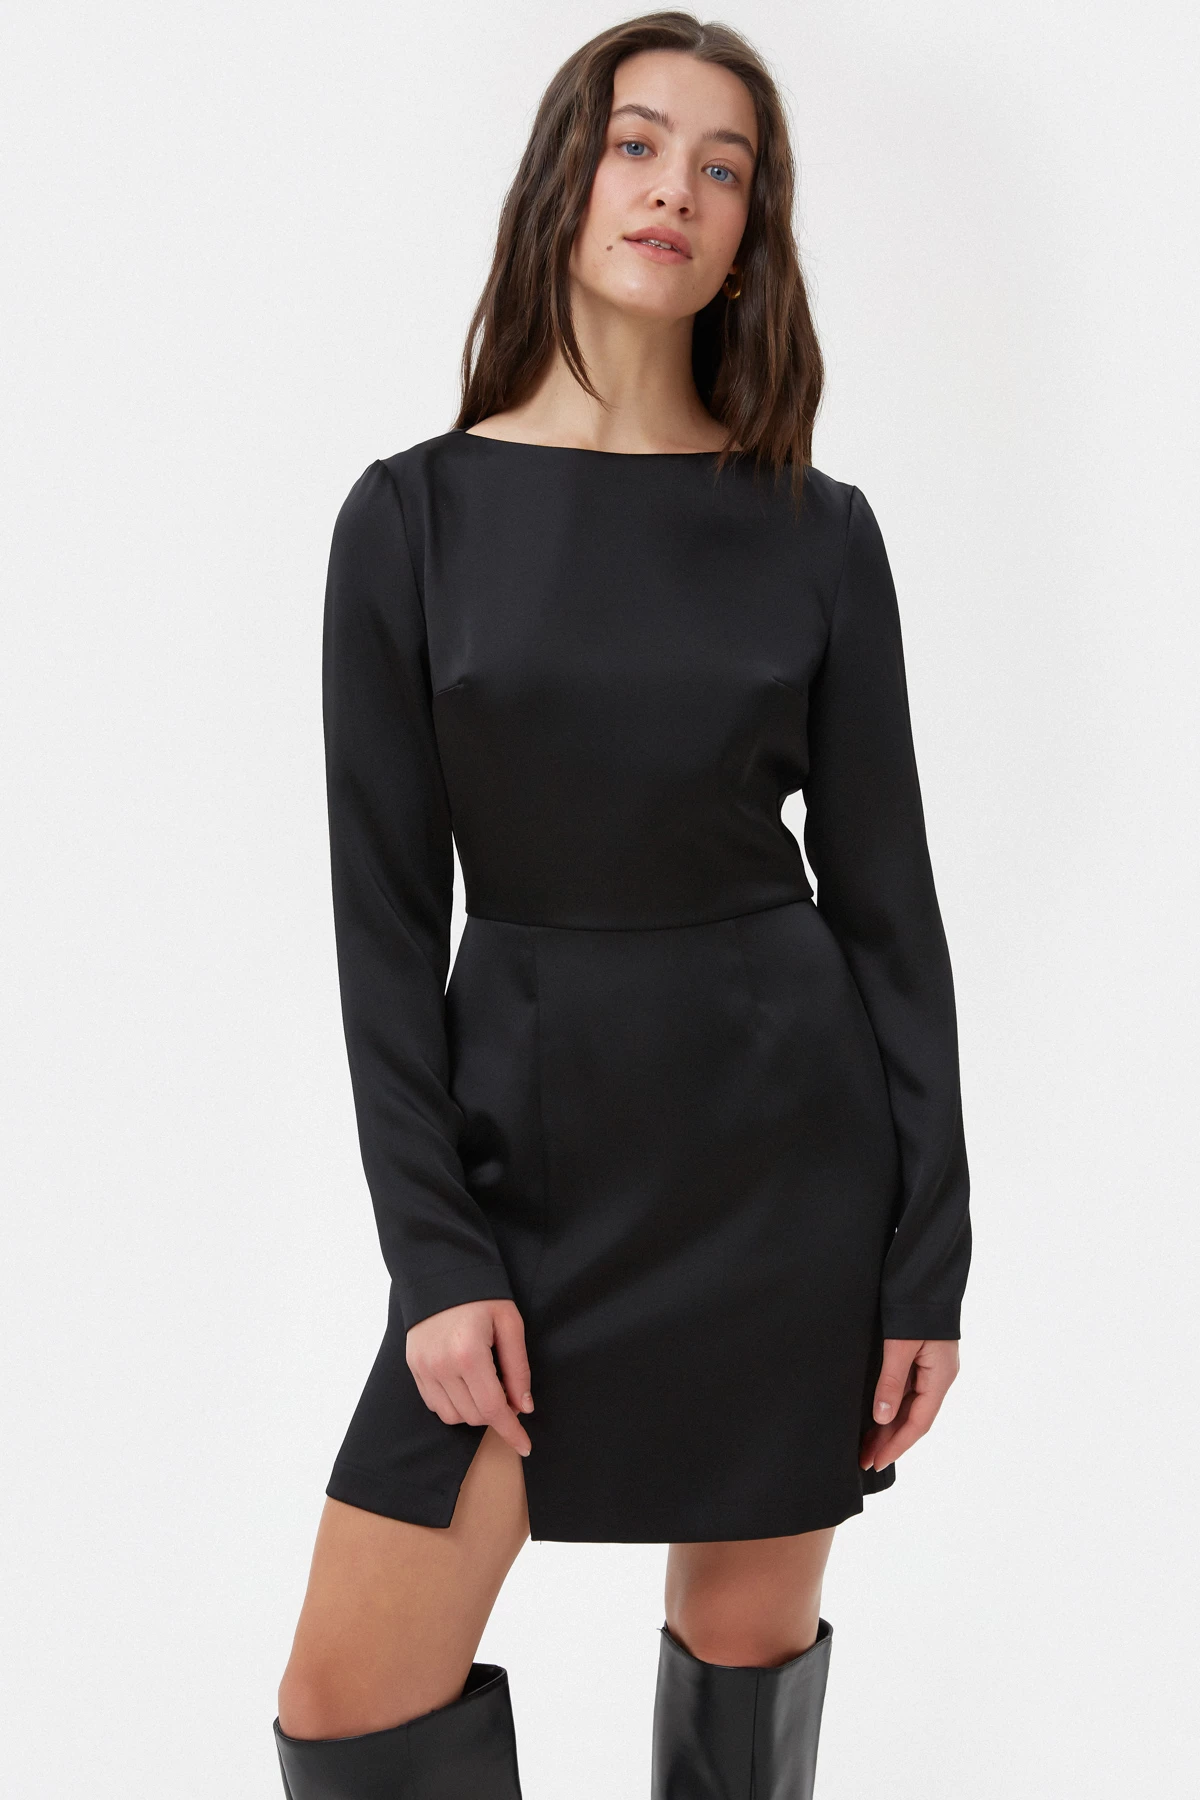 Коротка чорна сукня з довгим рукавом з сатину, фото 2